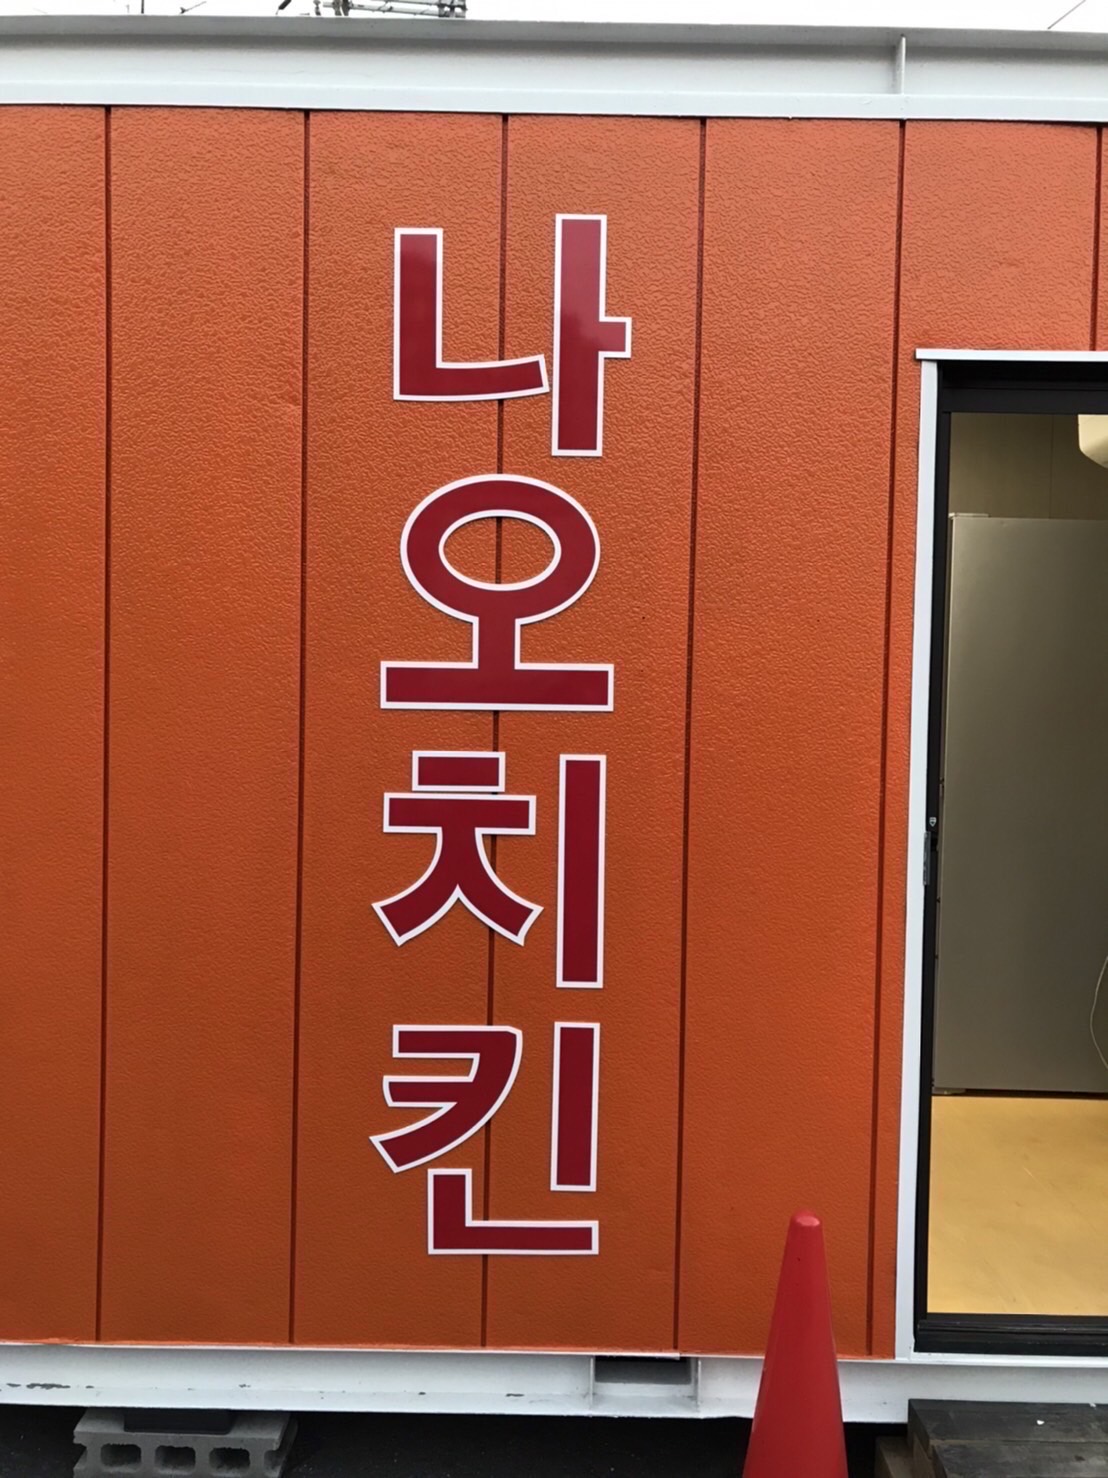 IMG 1063 - 韓国料理店さんの看板を制作しました。『ナオチキン』나오치킨。ハングル切文字。